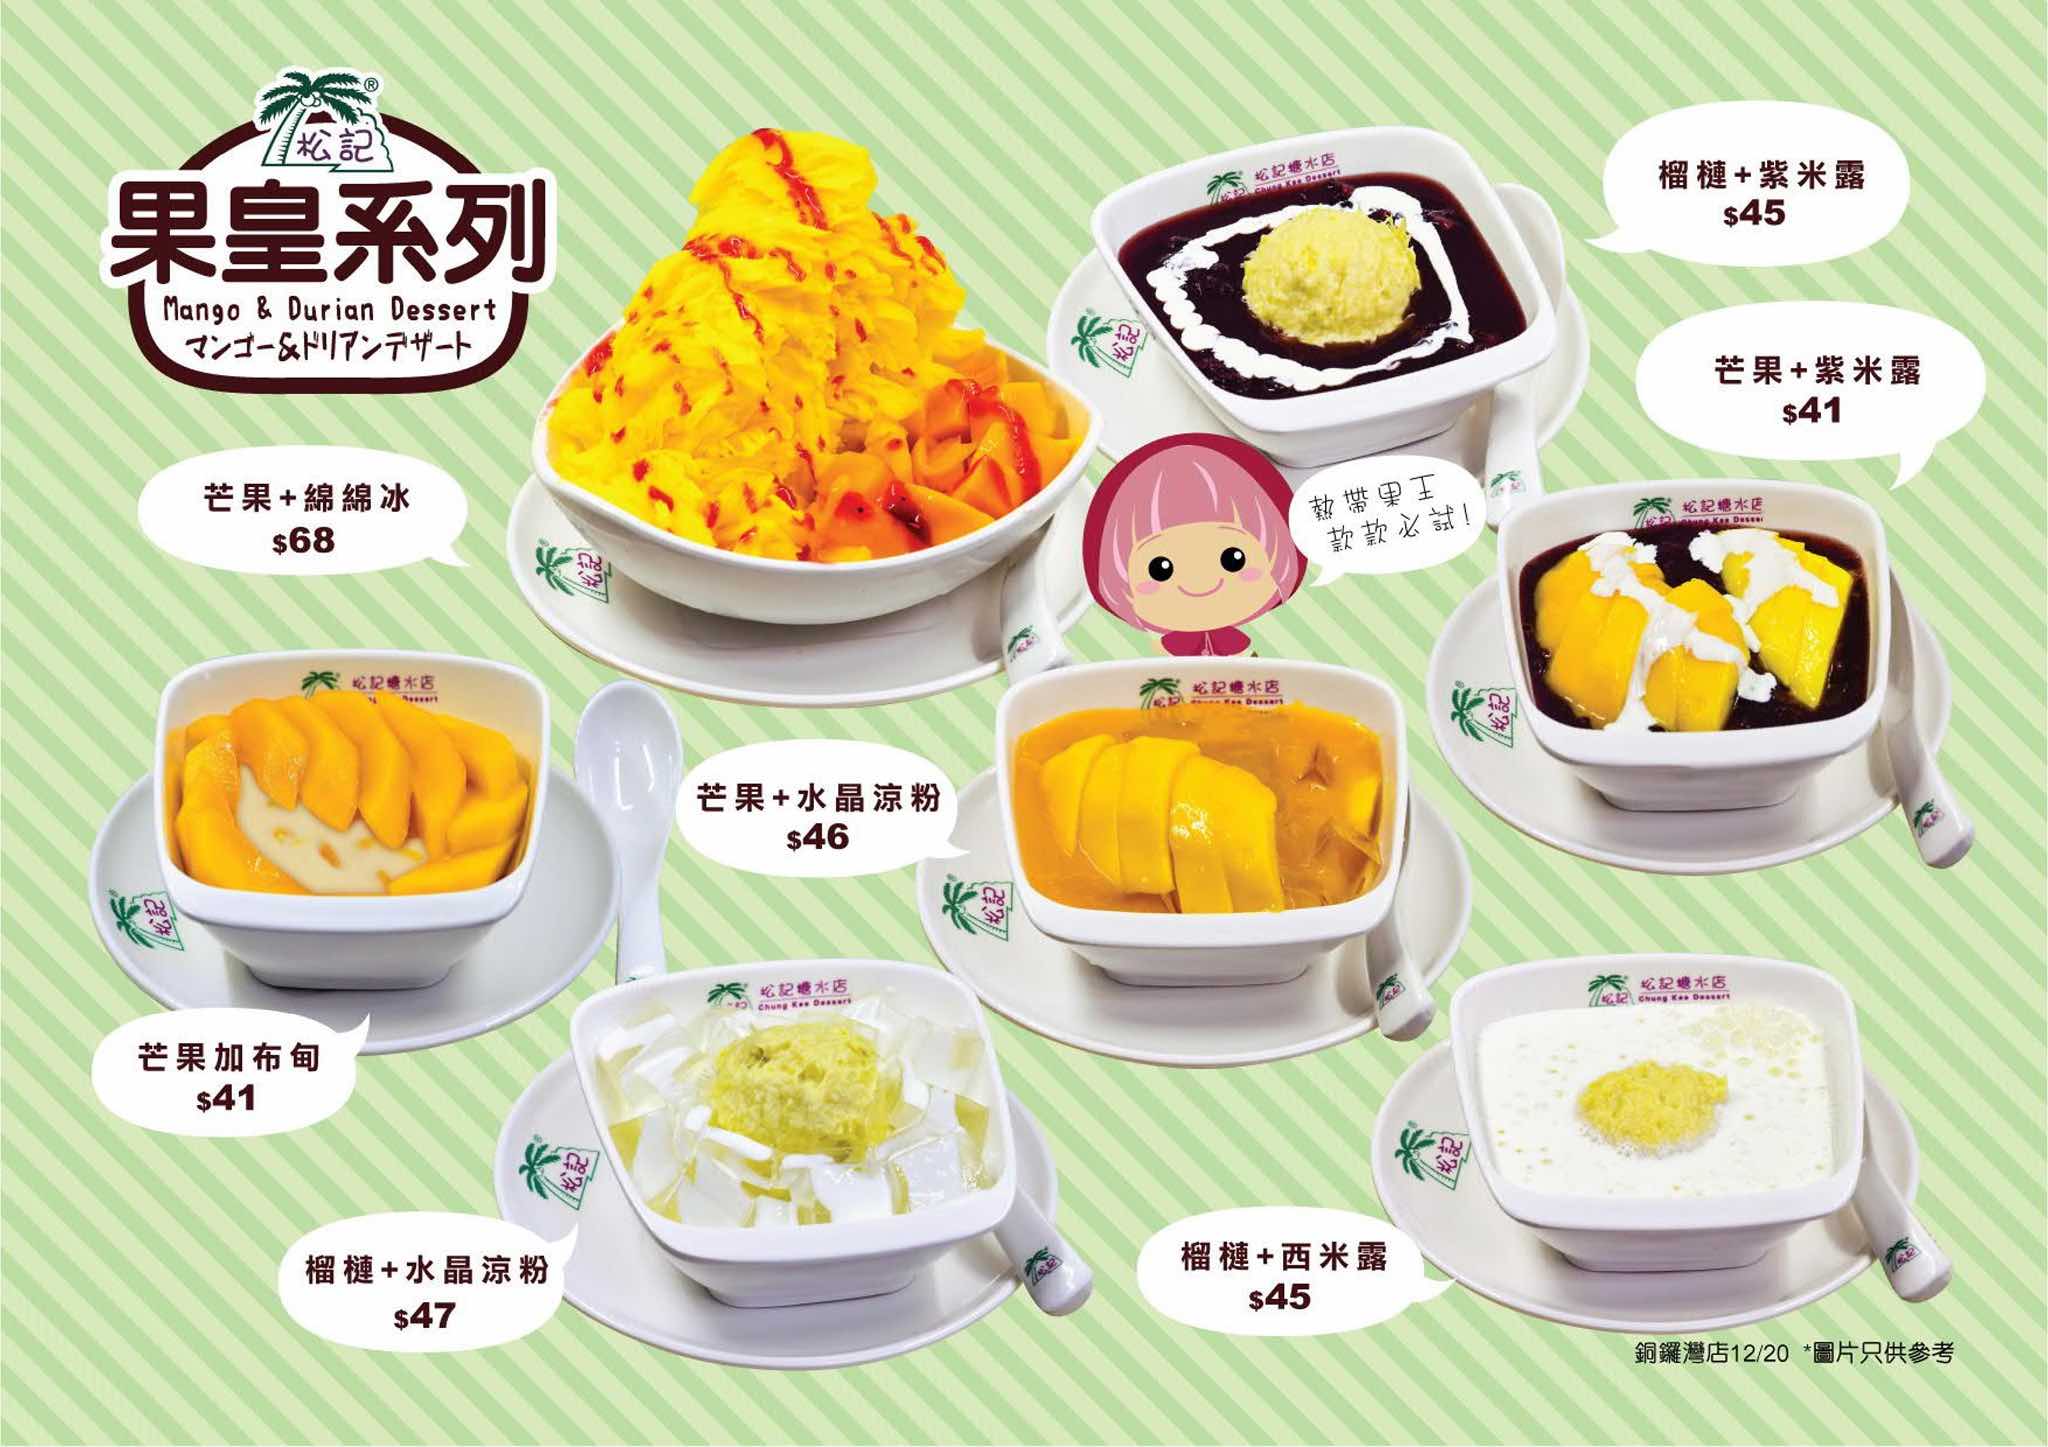 松記糖水店 ChungKee Dessert的特許經營香港區加盟店項目4